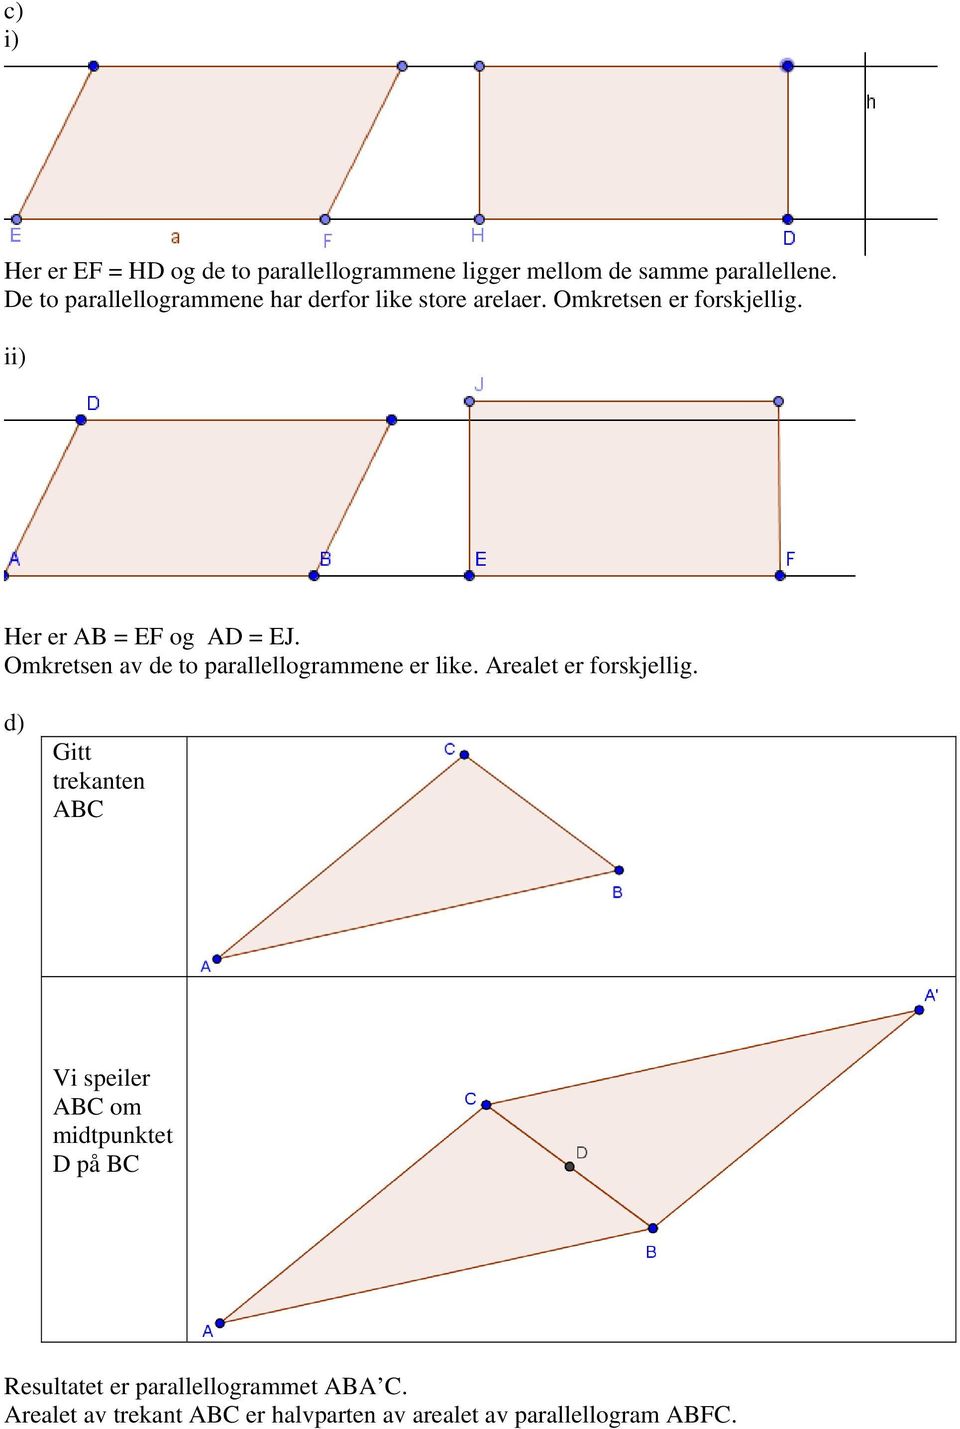 ii) Her er AB = EF og AD = EJ. Omkretsen av de to parallellogrammene er like. Arealet er forskjellig.